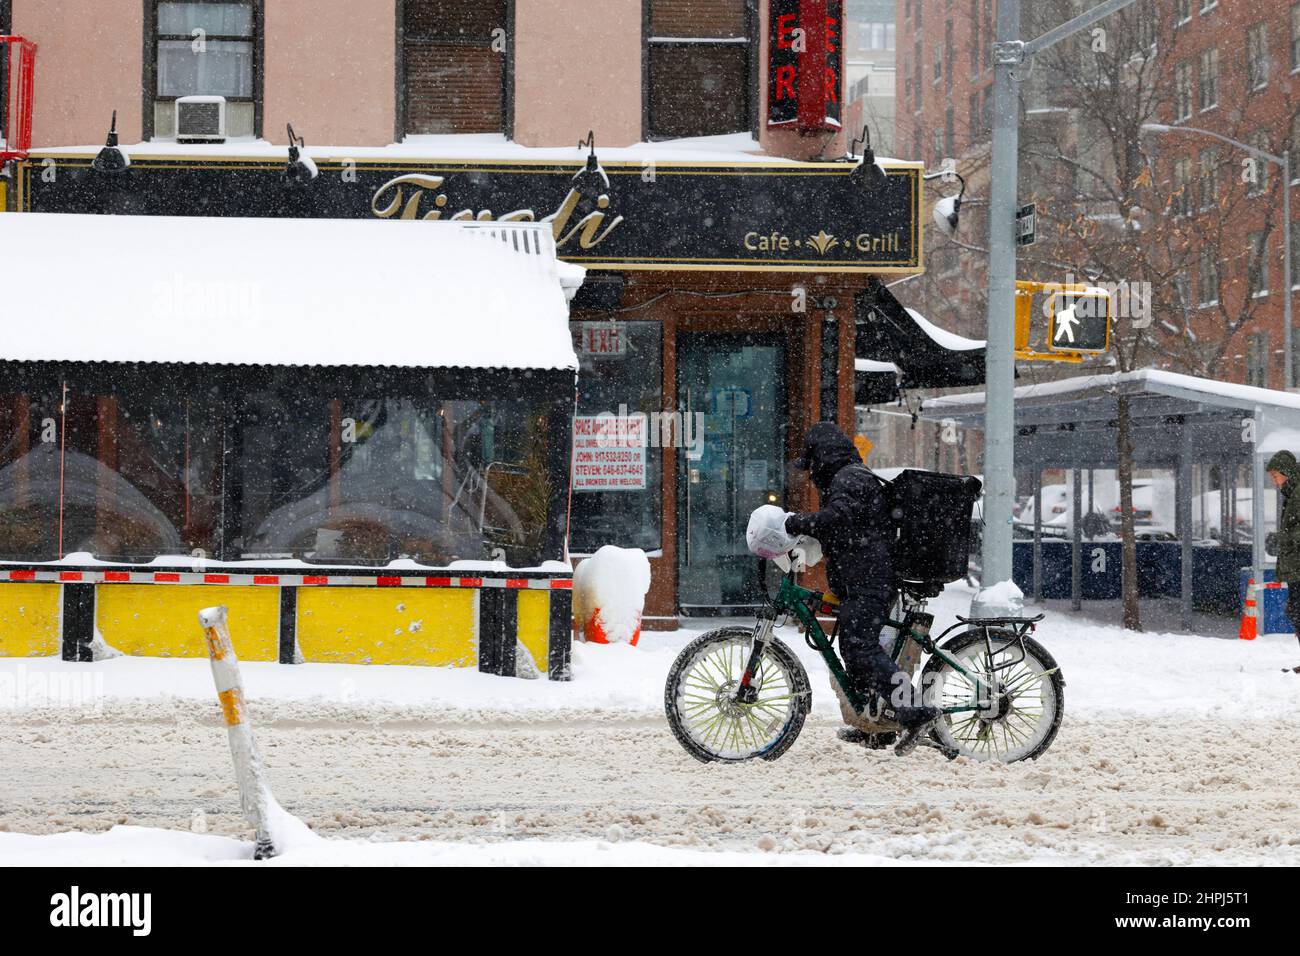 Un messaggero per la consegna di cibo in bicicletta su una strada innevata e spazzolosa a New York con un fuori del business, ristorante vacante in affitto nel backgrnd Foto Stock